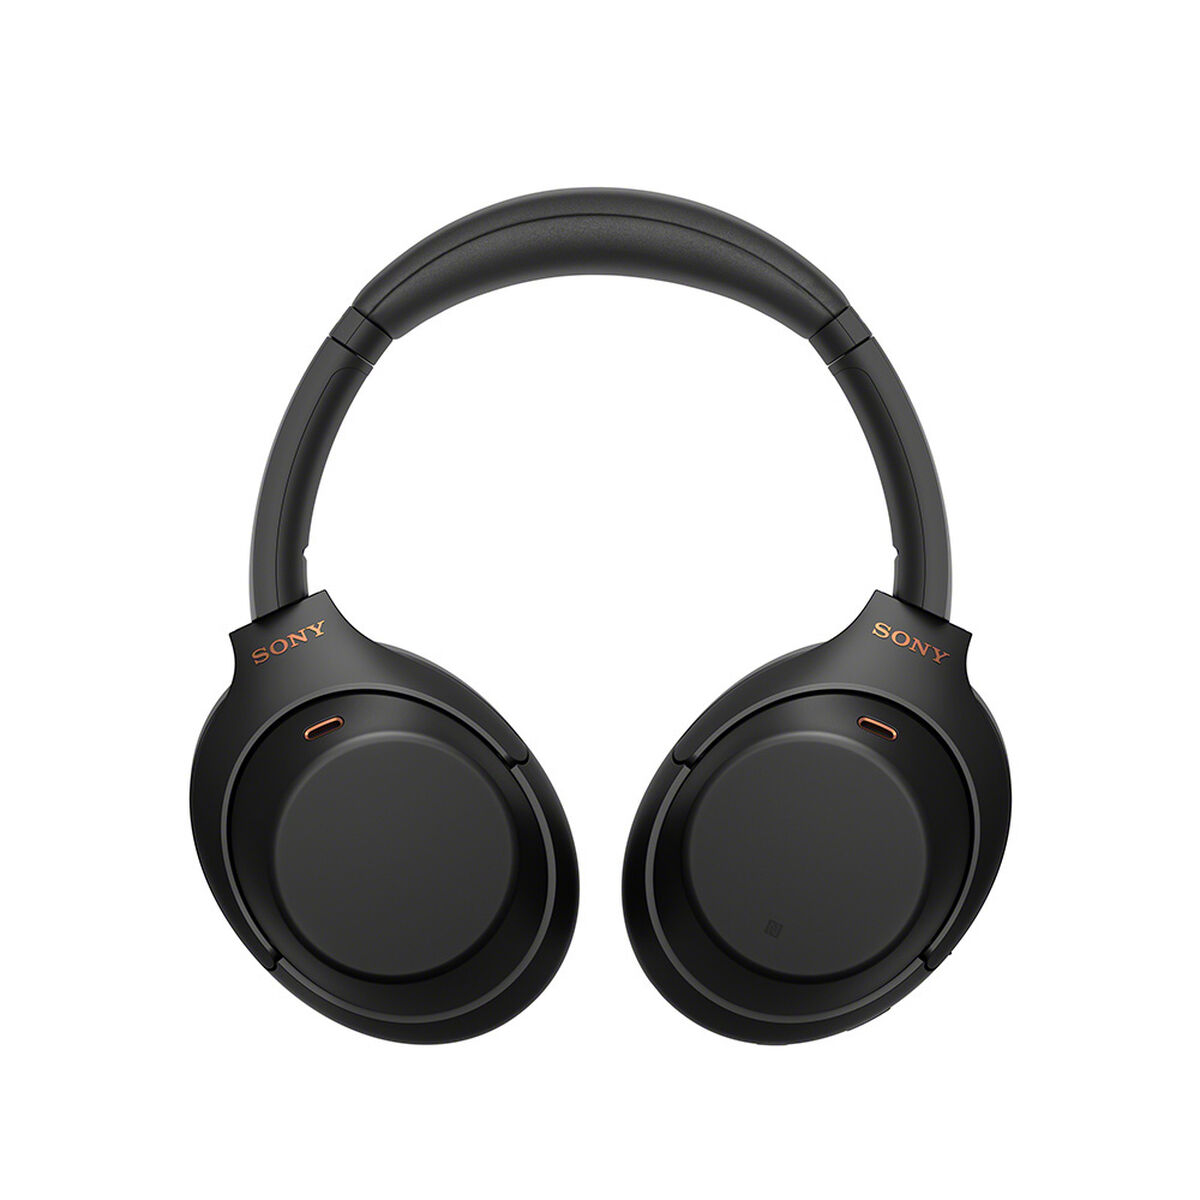 Audífonos Bluetooth Over Ear Sony WH1000XM4 Negros